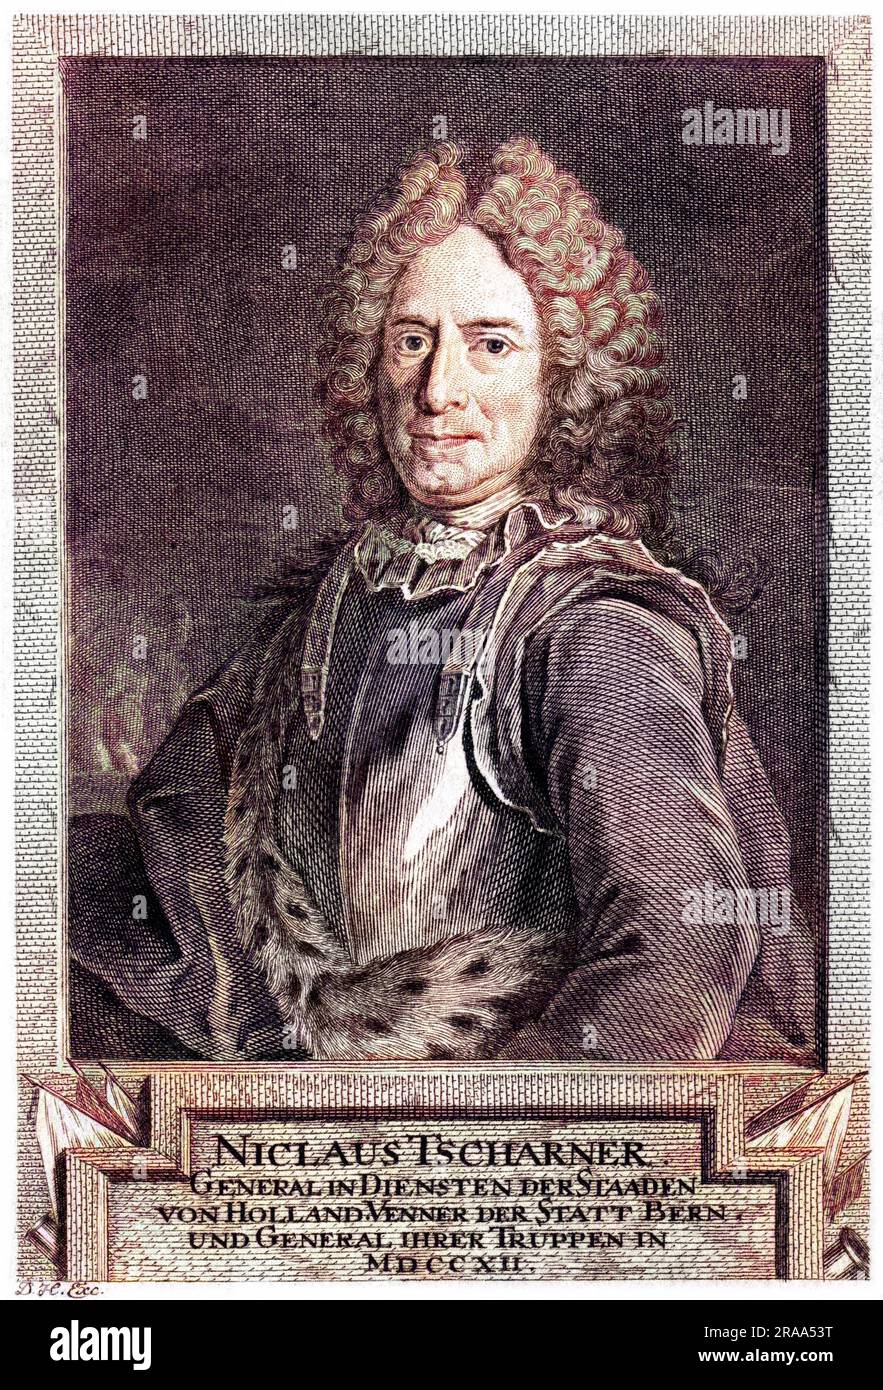 NICLAUS TSCHARNER in der Schweiz geborener Militärkommandant, der in den Niederlanden Dienst nahm Datum: 1727 - 1794 Stockfoto